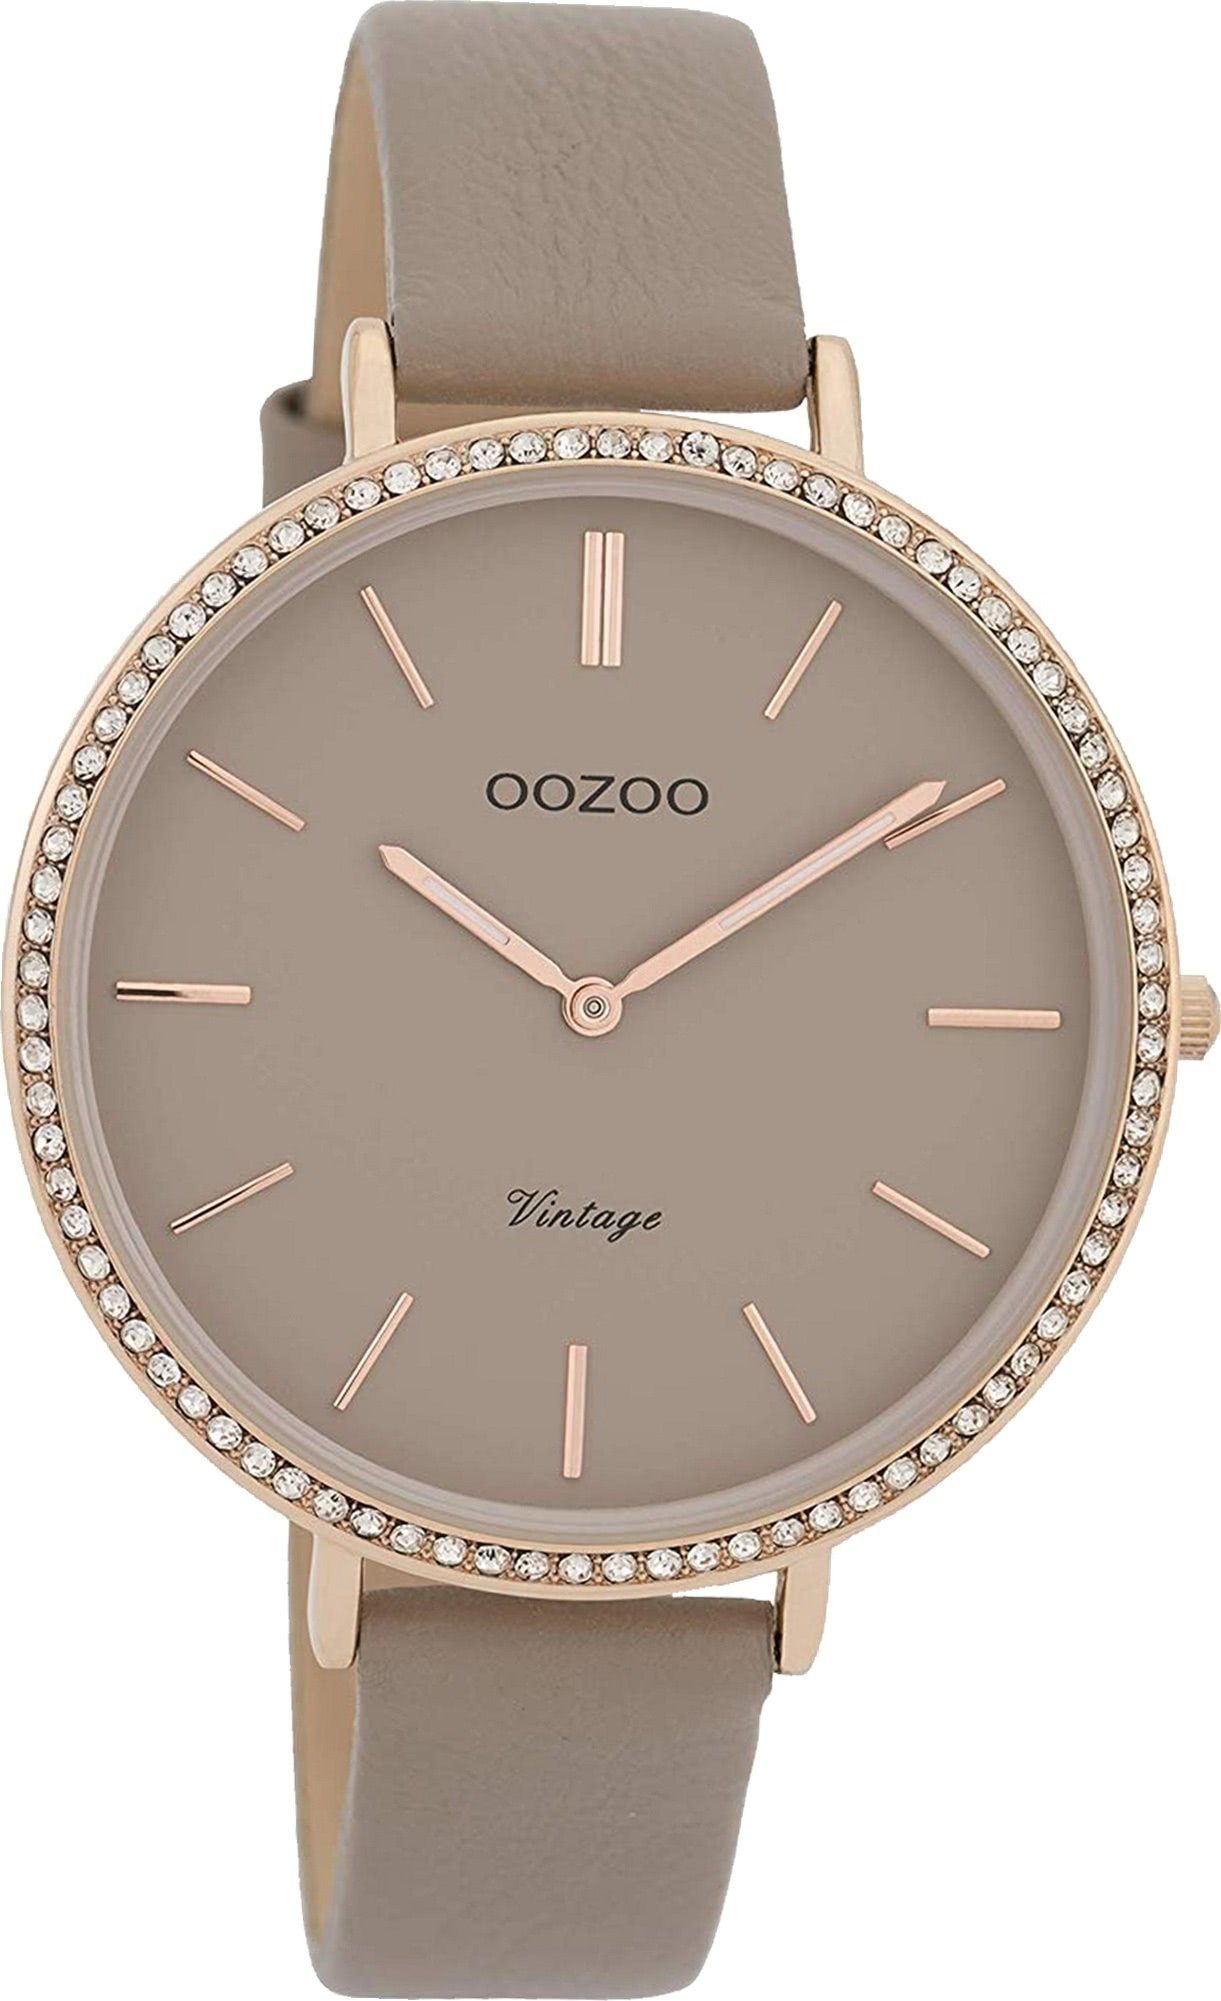 OOZOO Quarzuhr Oozoo Leder Damen Uhr C9801 Analog, Damenuhr Lederarmband braungrau, rundes Gehäuse, groß (ca. 40mm)